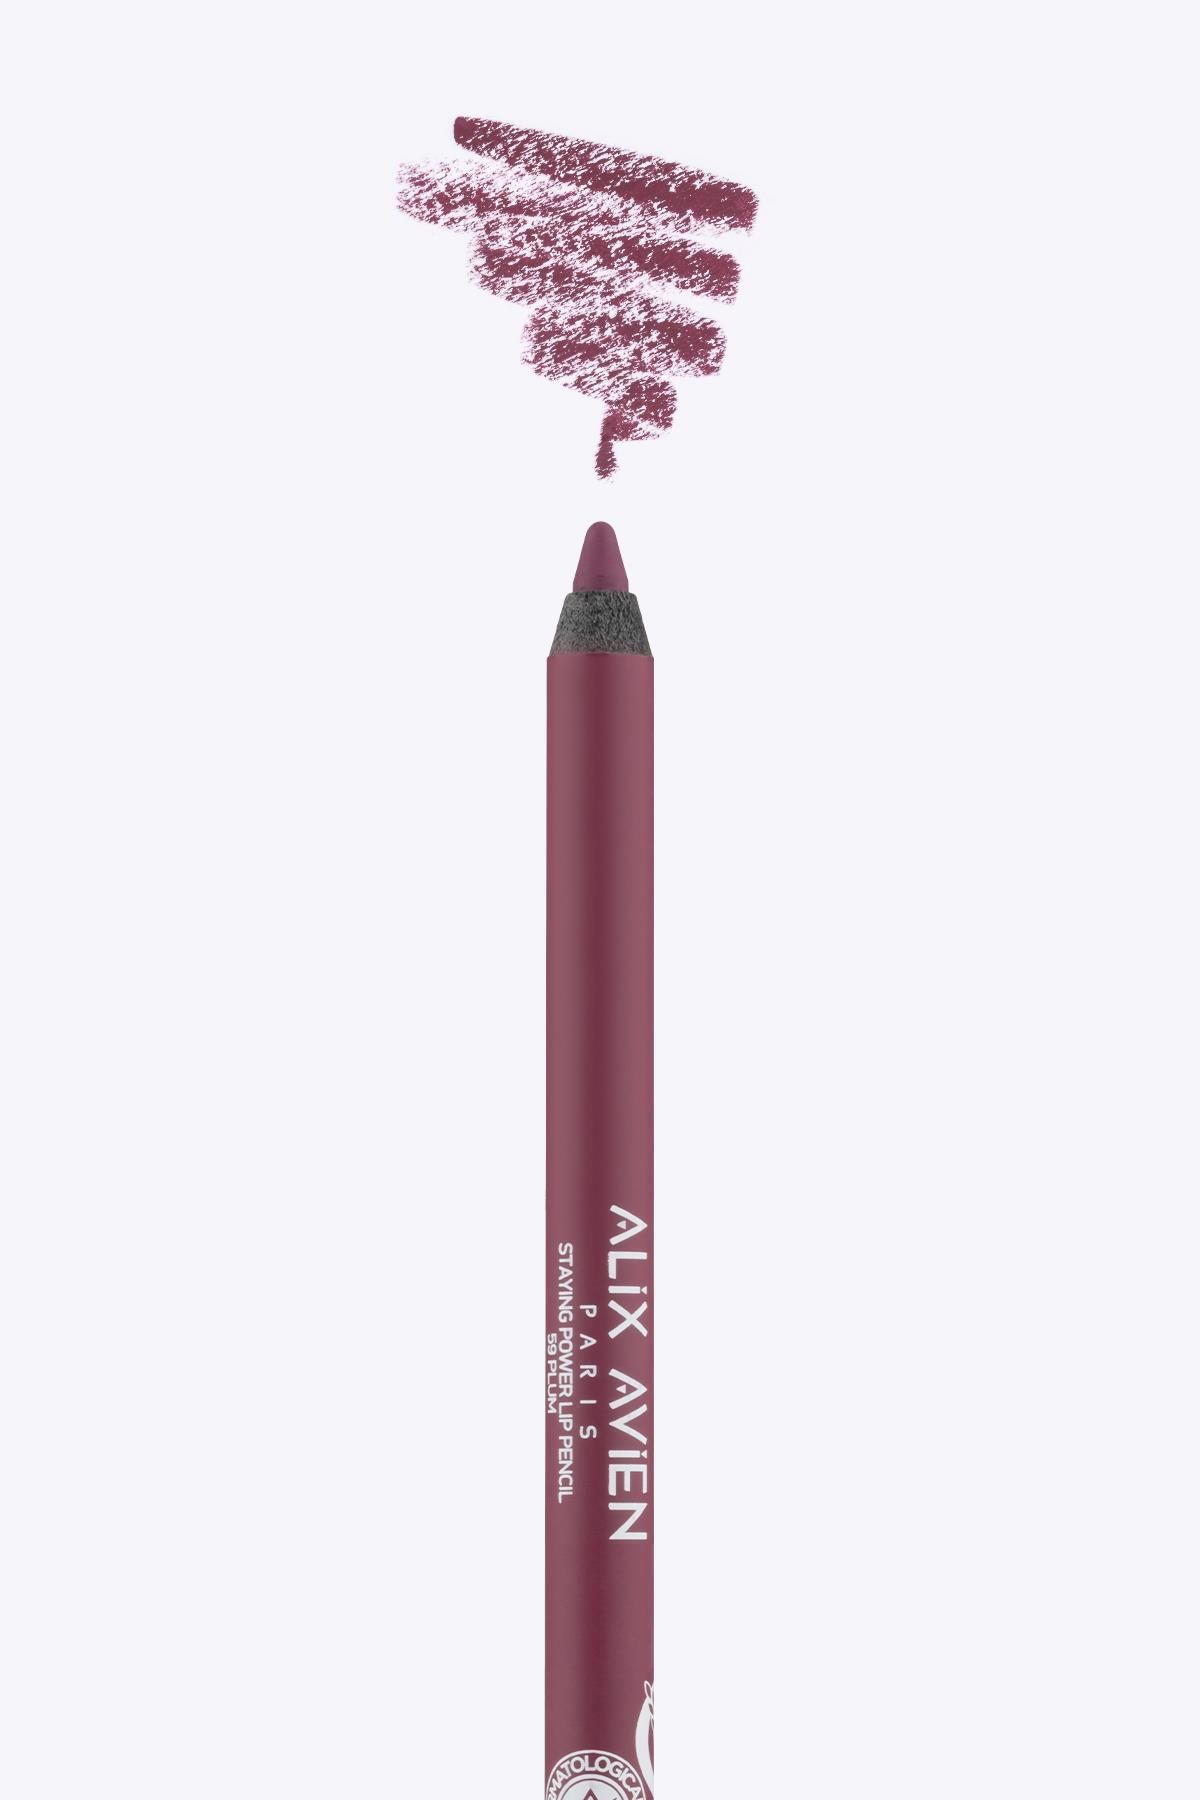 Alix Avien Uzun Süre Kalıcı Suya Dayanıklı Dudak Kalemi - Staying Power Lip Pencil 59 Plum